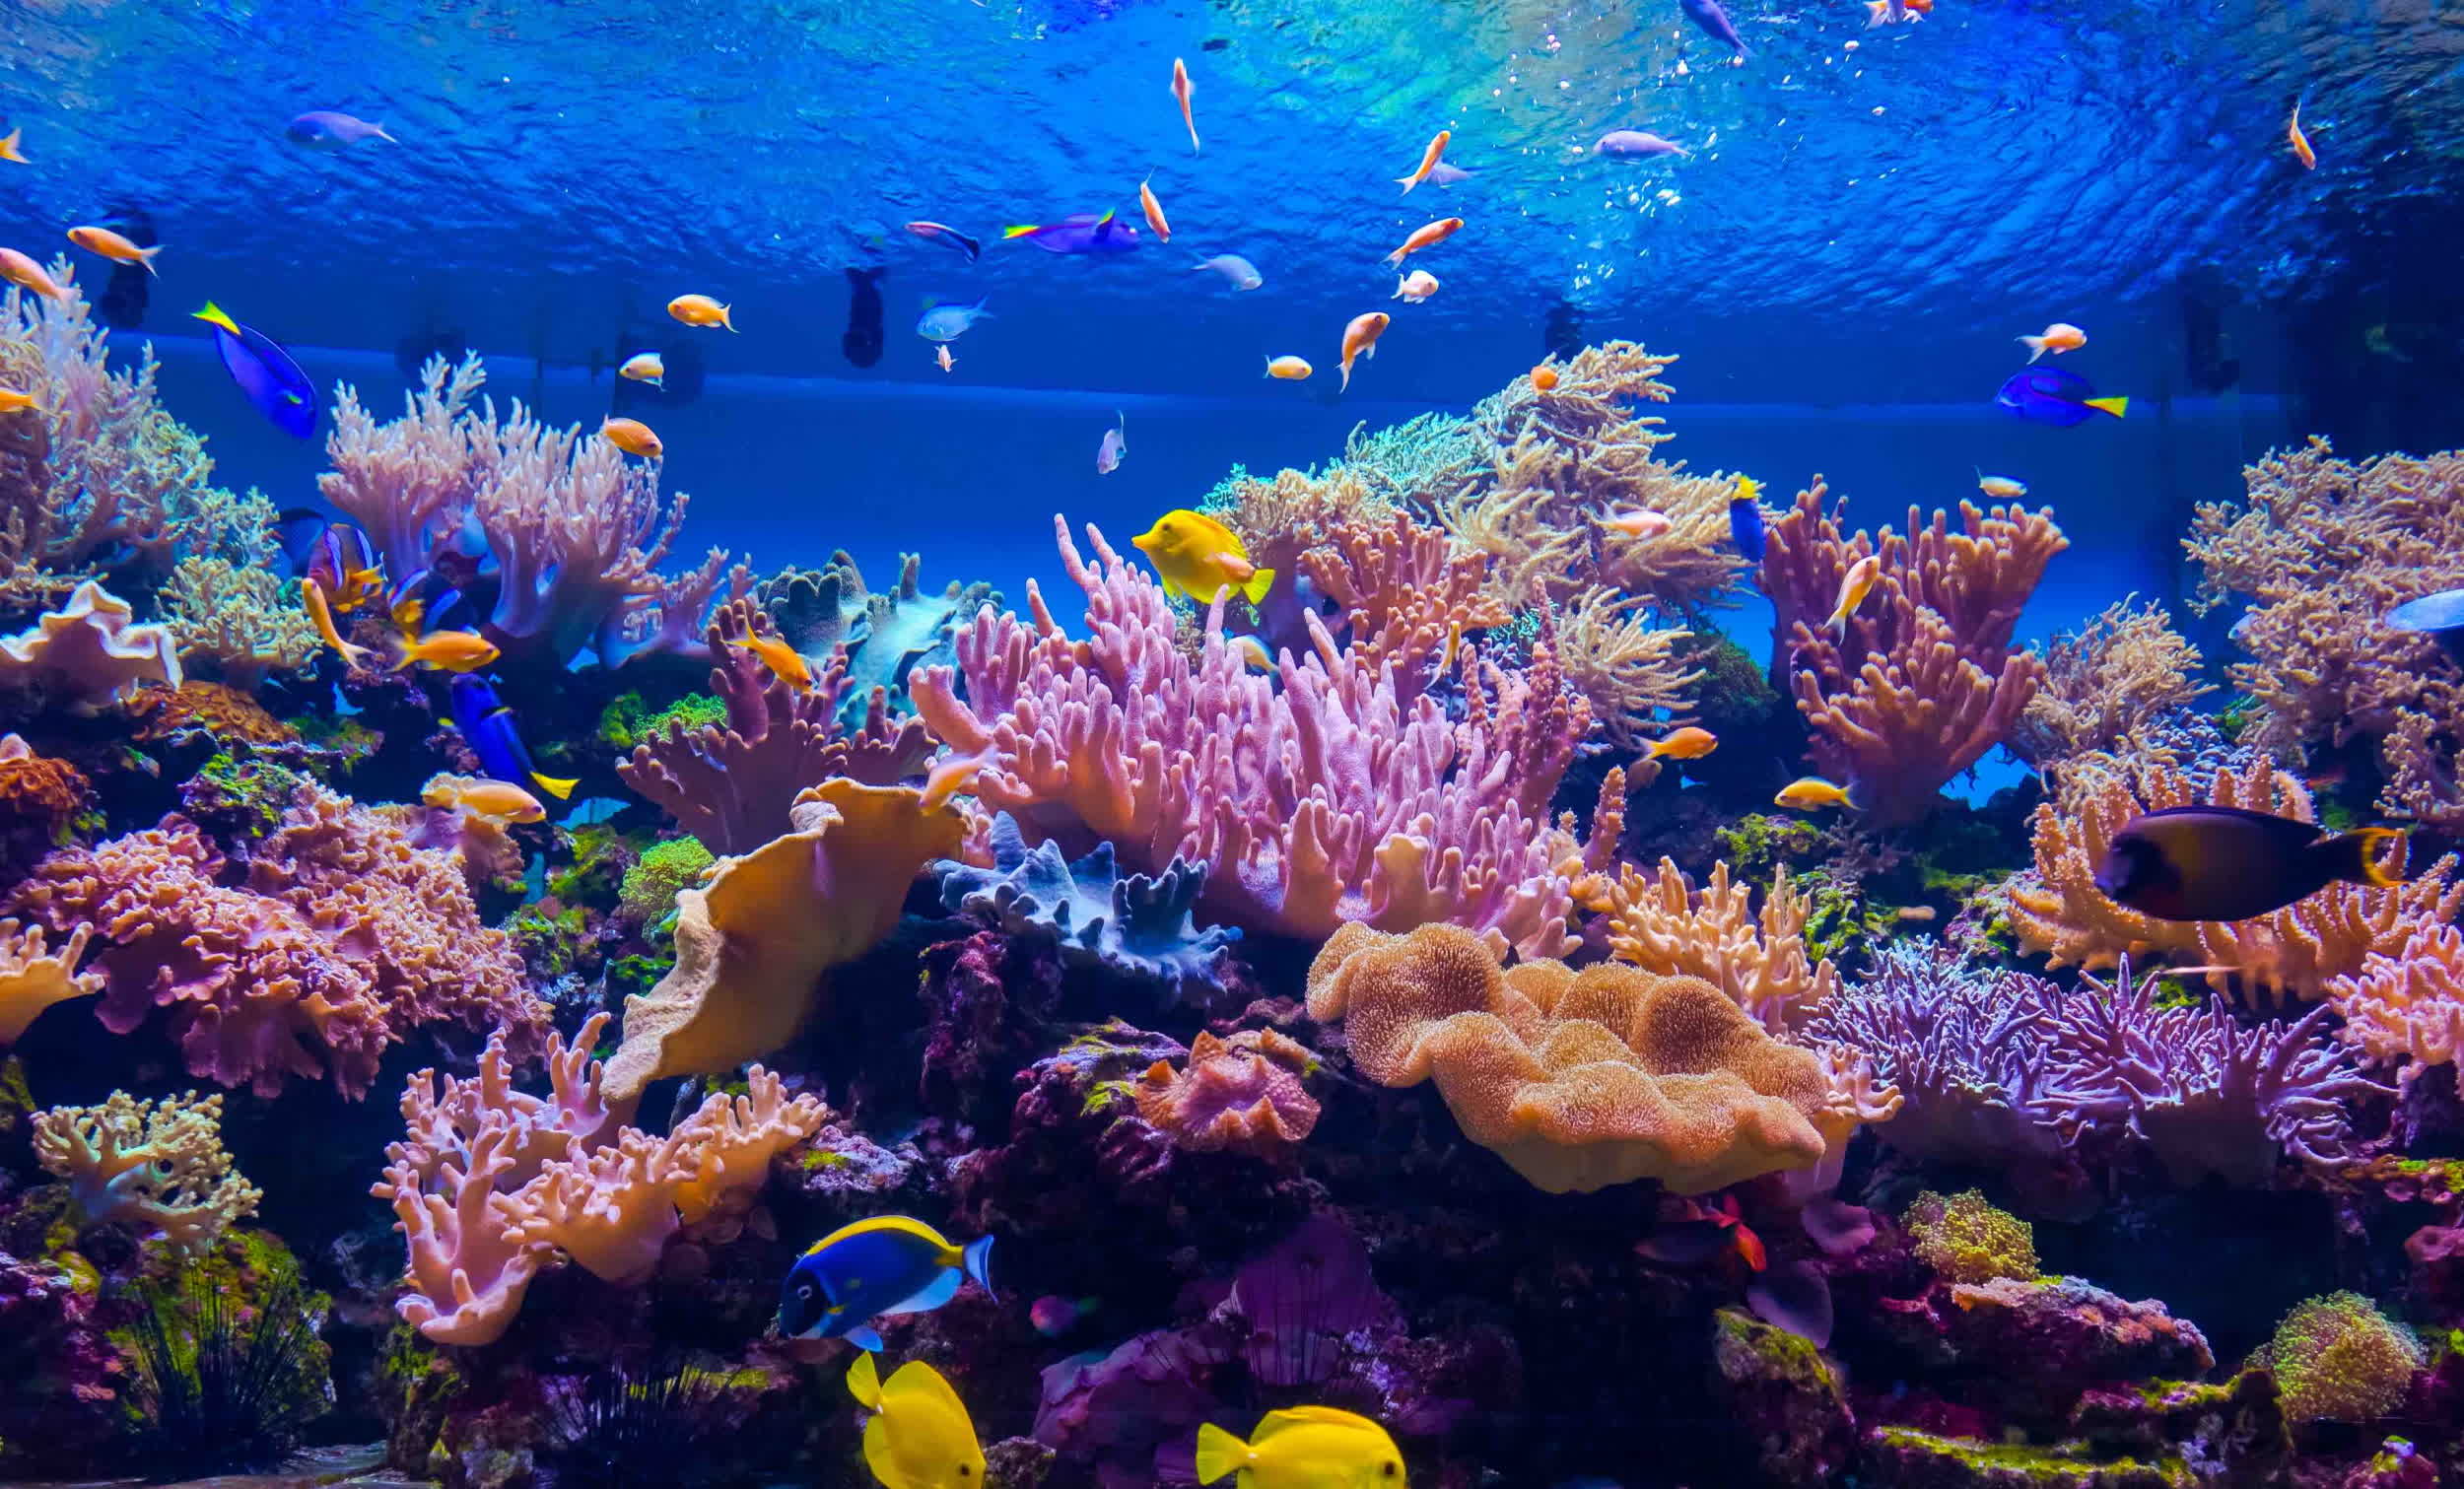 Los arrecifes de coral dañados se pueden salvar con un atractivo paisaje sonoro submarino, sugiere un estudio